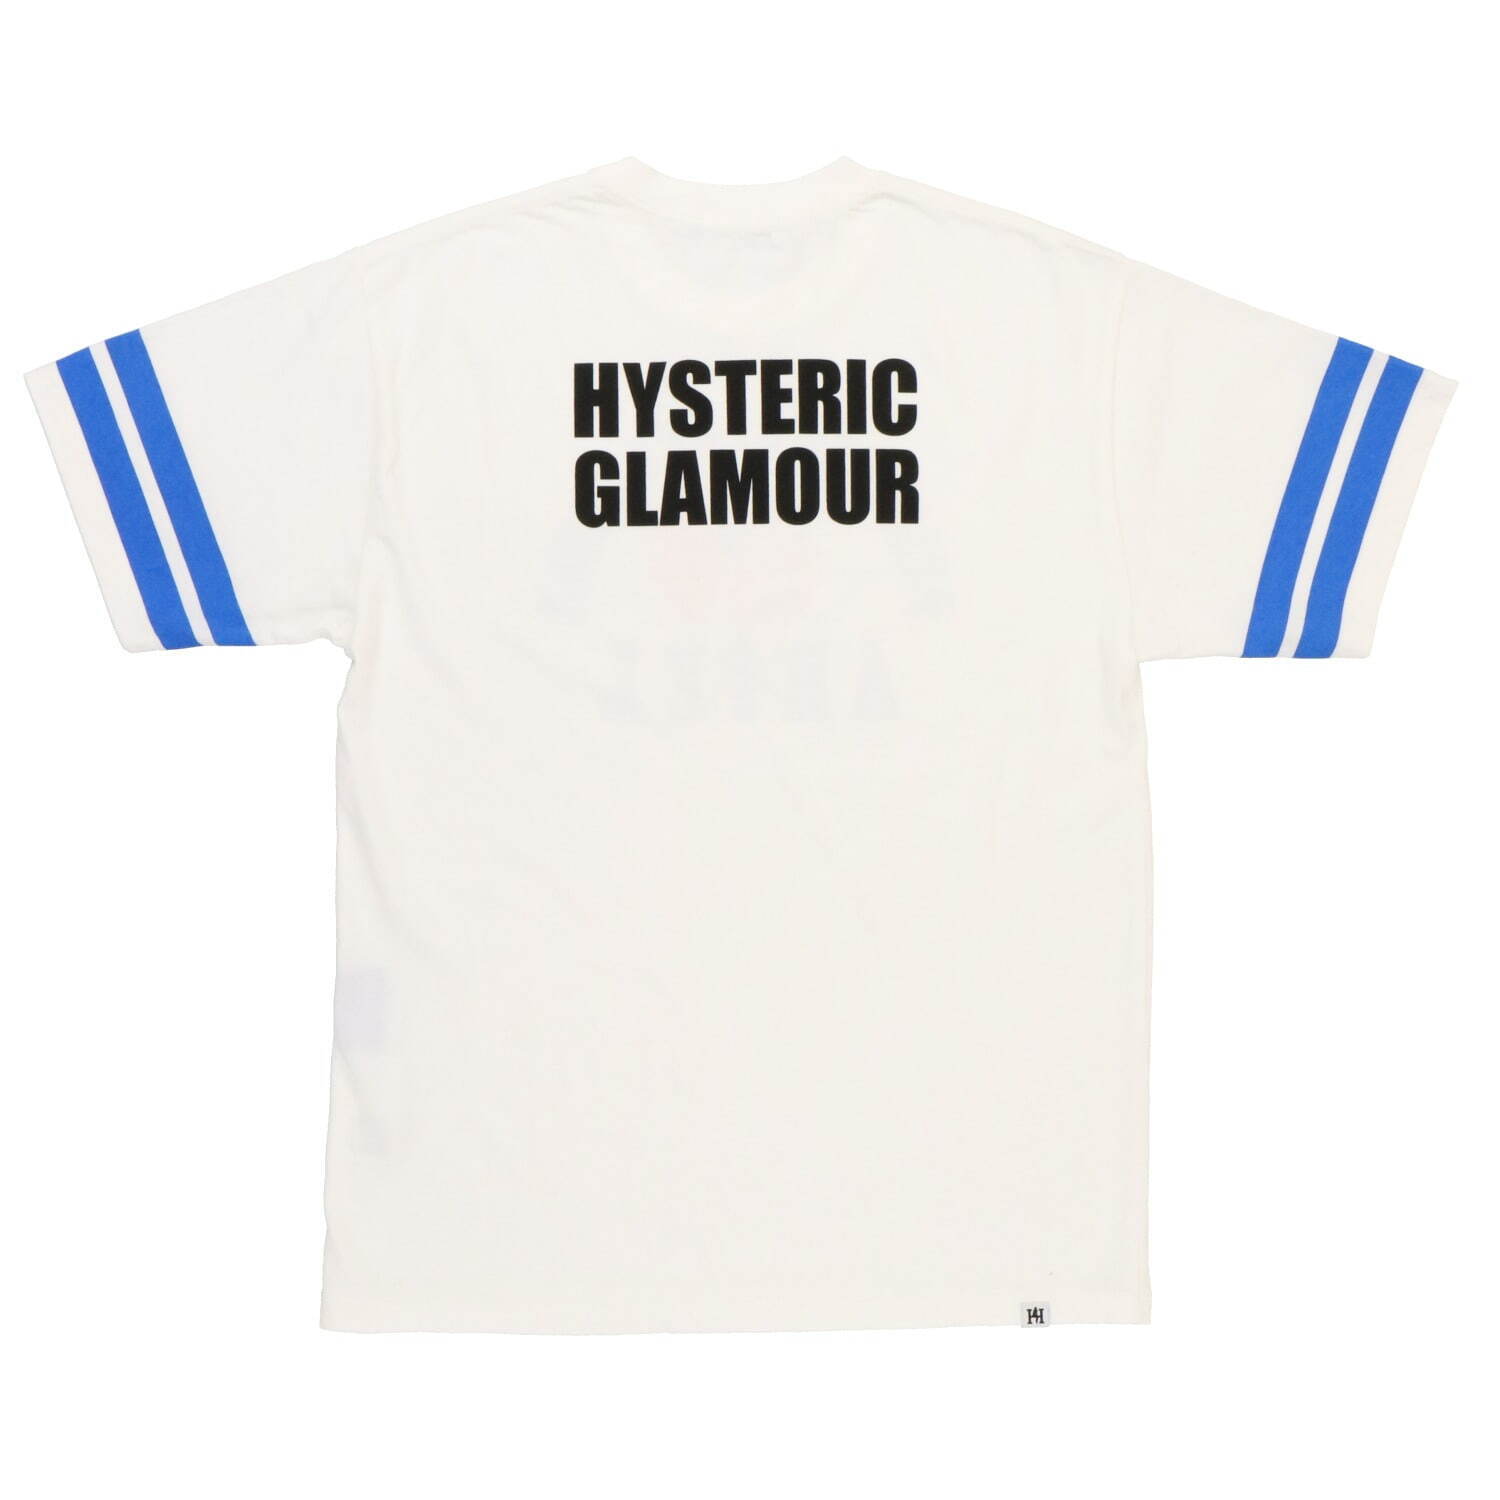 東京ディズニーリゾート「ヒステリックグラマー」プロデュースTシャツ
アリエル 19,800円